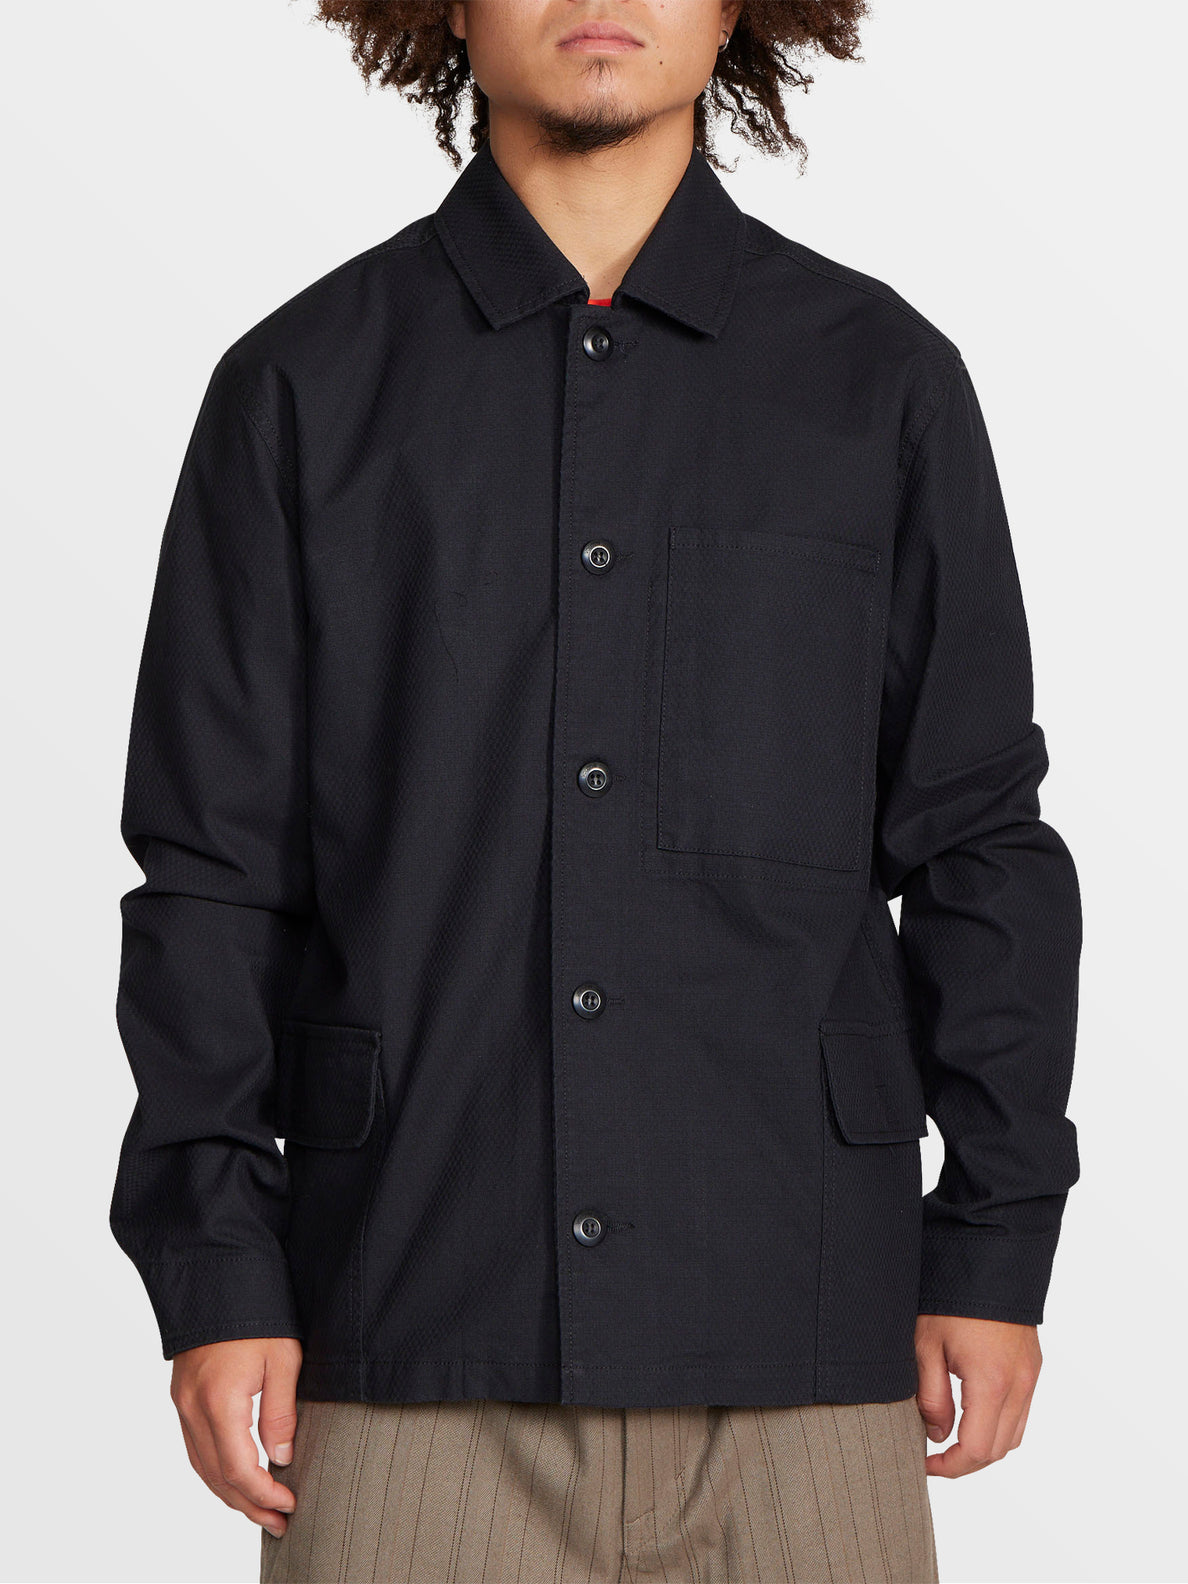 Tokyo True Shirt Jacket - Black (A0512204_BLK) [F]